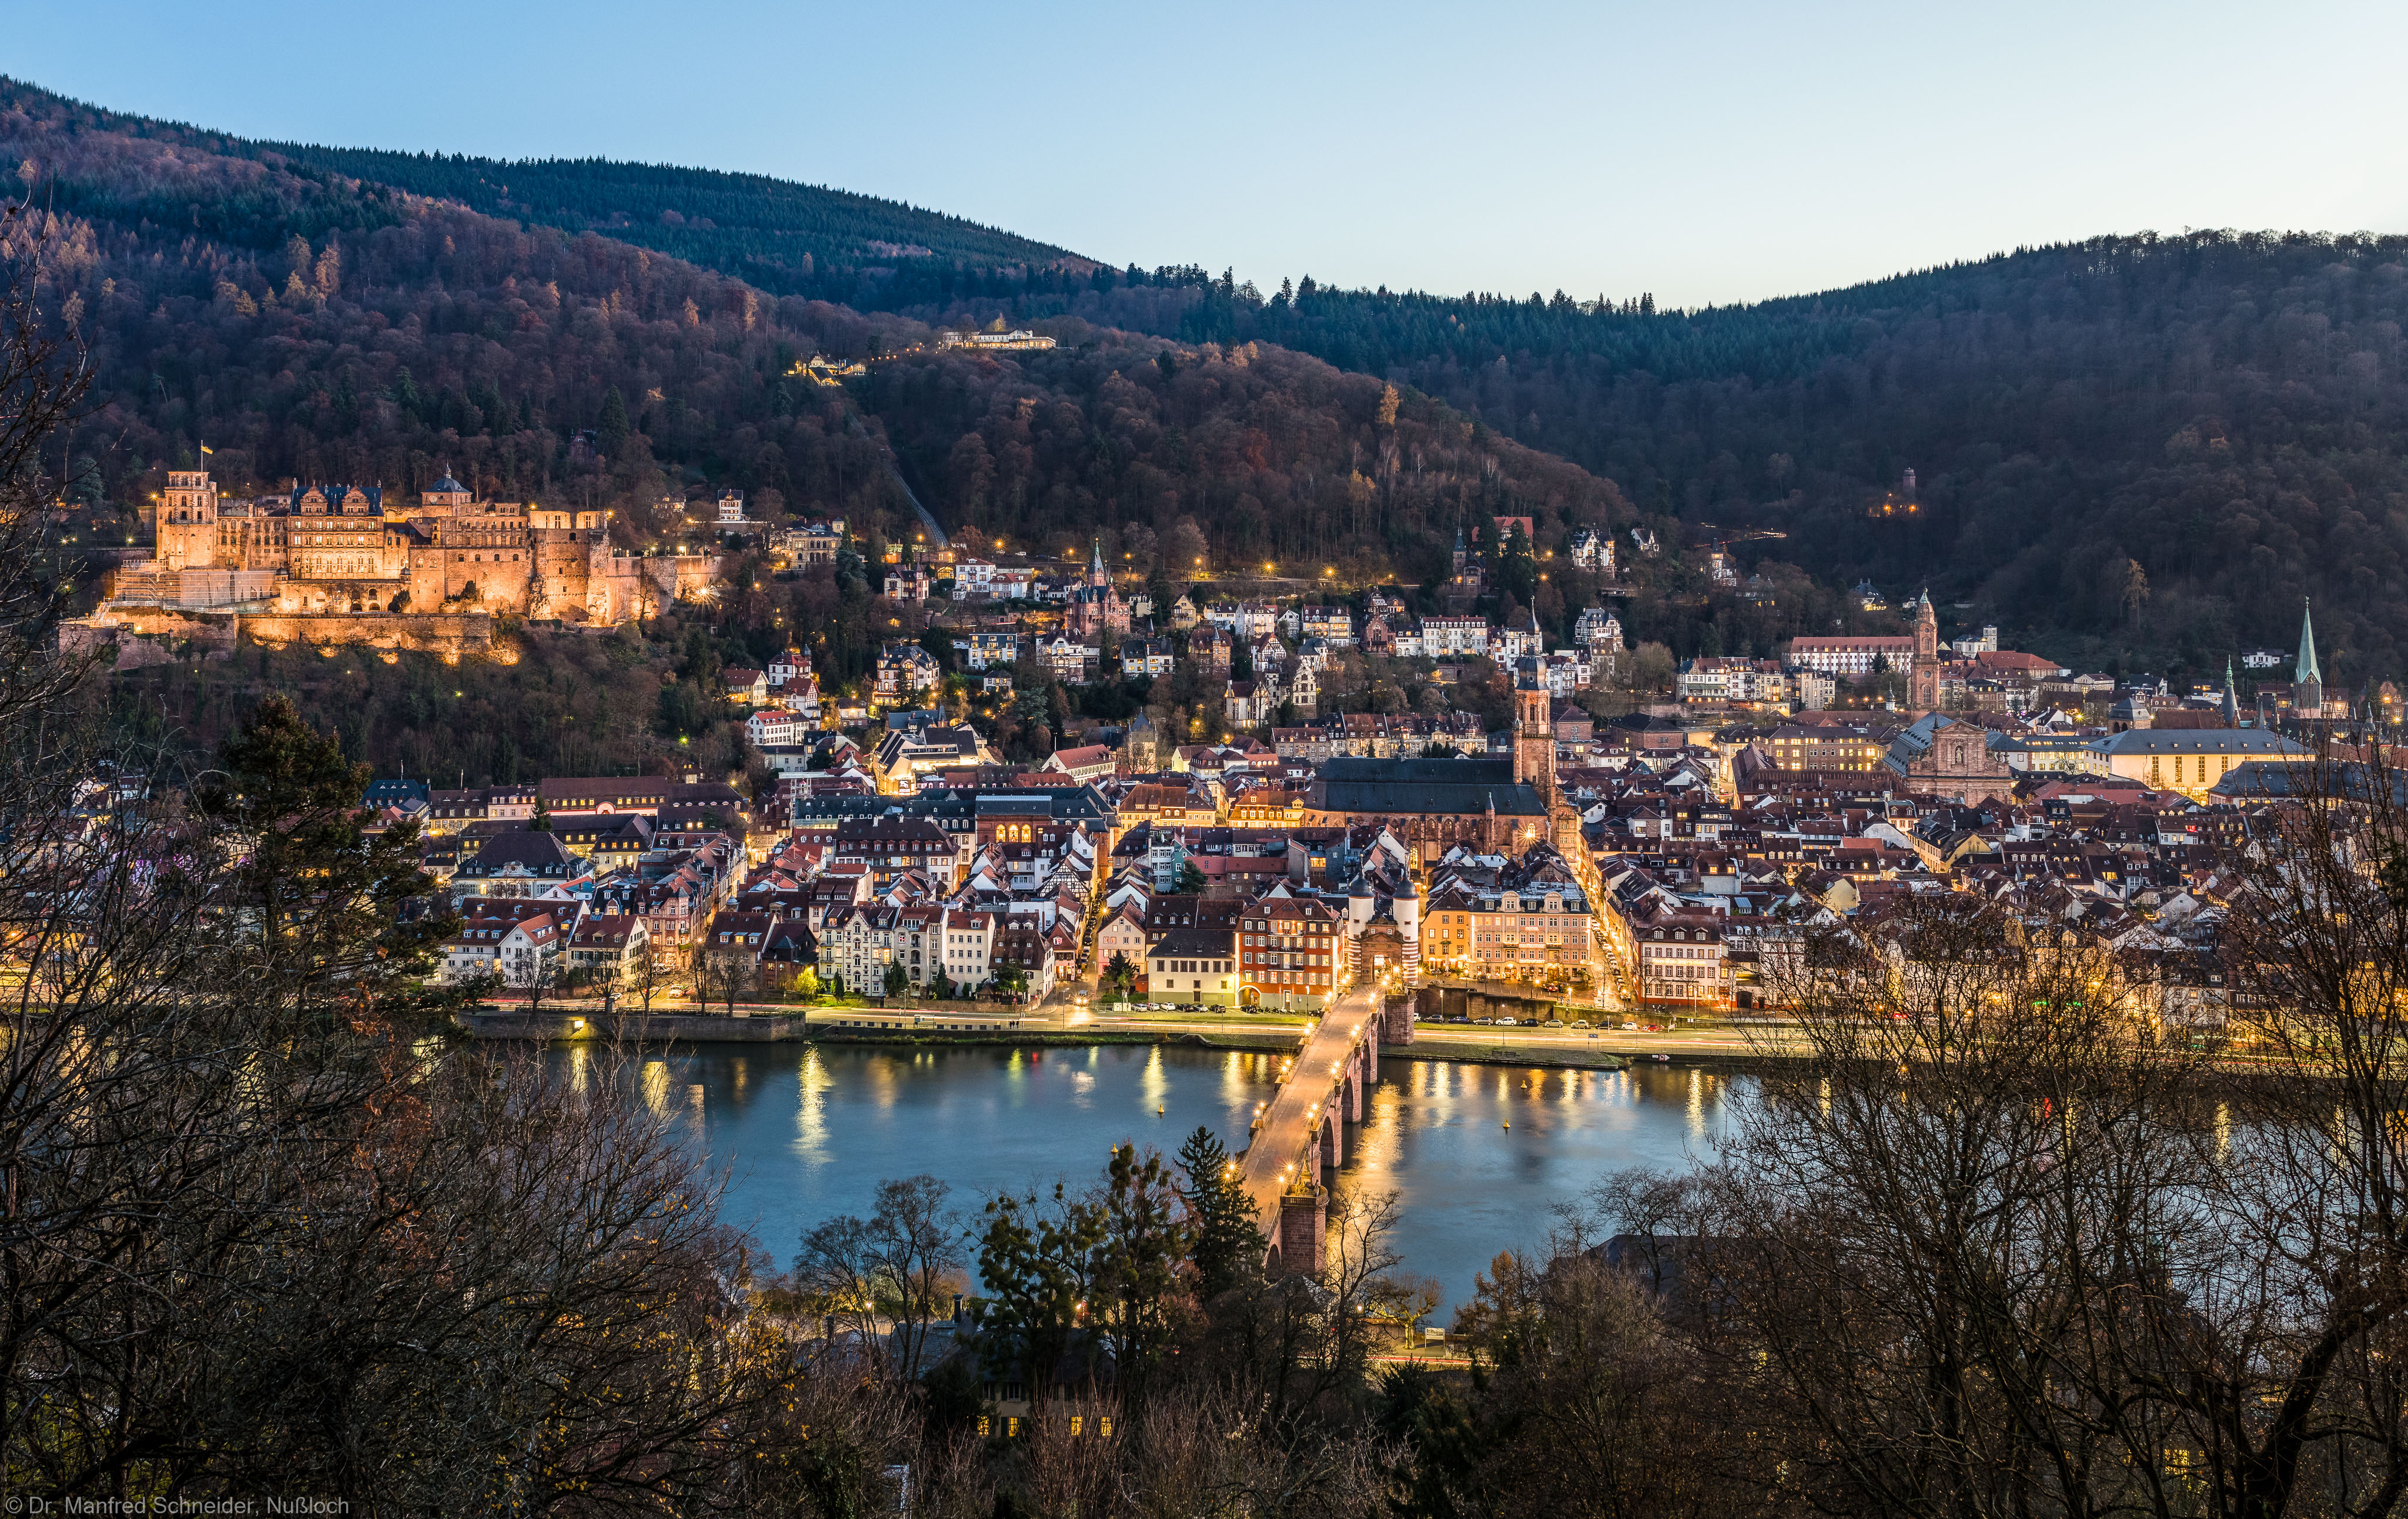 Heidelberg - Heiliggeistkirche - Nordseite - Blick vom Oberen Philosophenweg auf Heidelberg, die Molkenkur, das Schloss, die Heiliggeistkirche, die Jesuitenkirche, die Peterskirche sowie den Neckar mit der Alten Brücke (aufgenommen im November 2016, am späten Nachmittag)